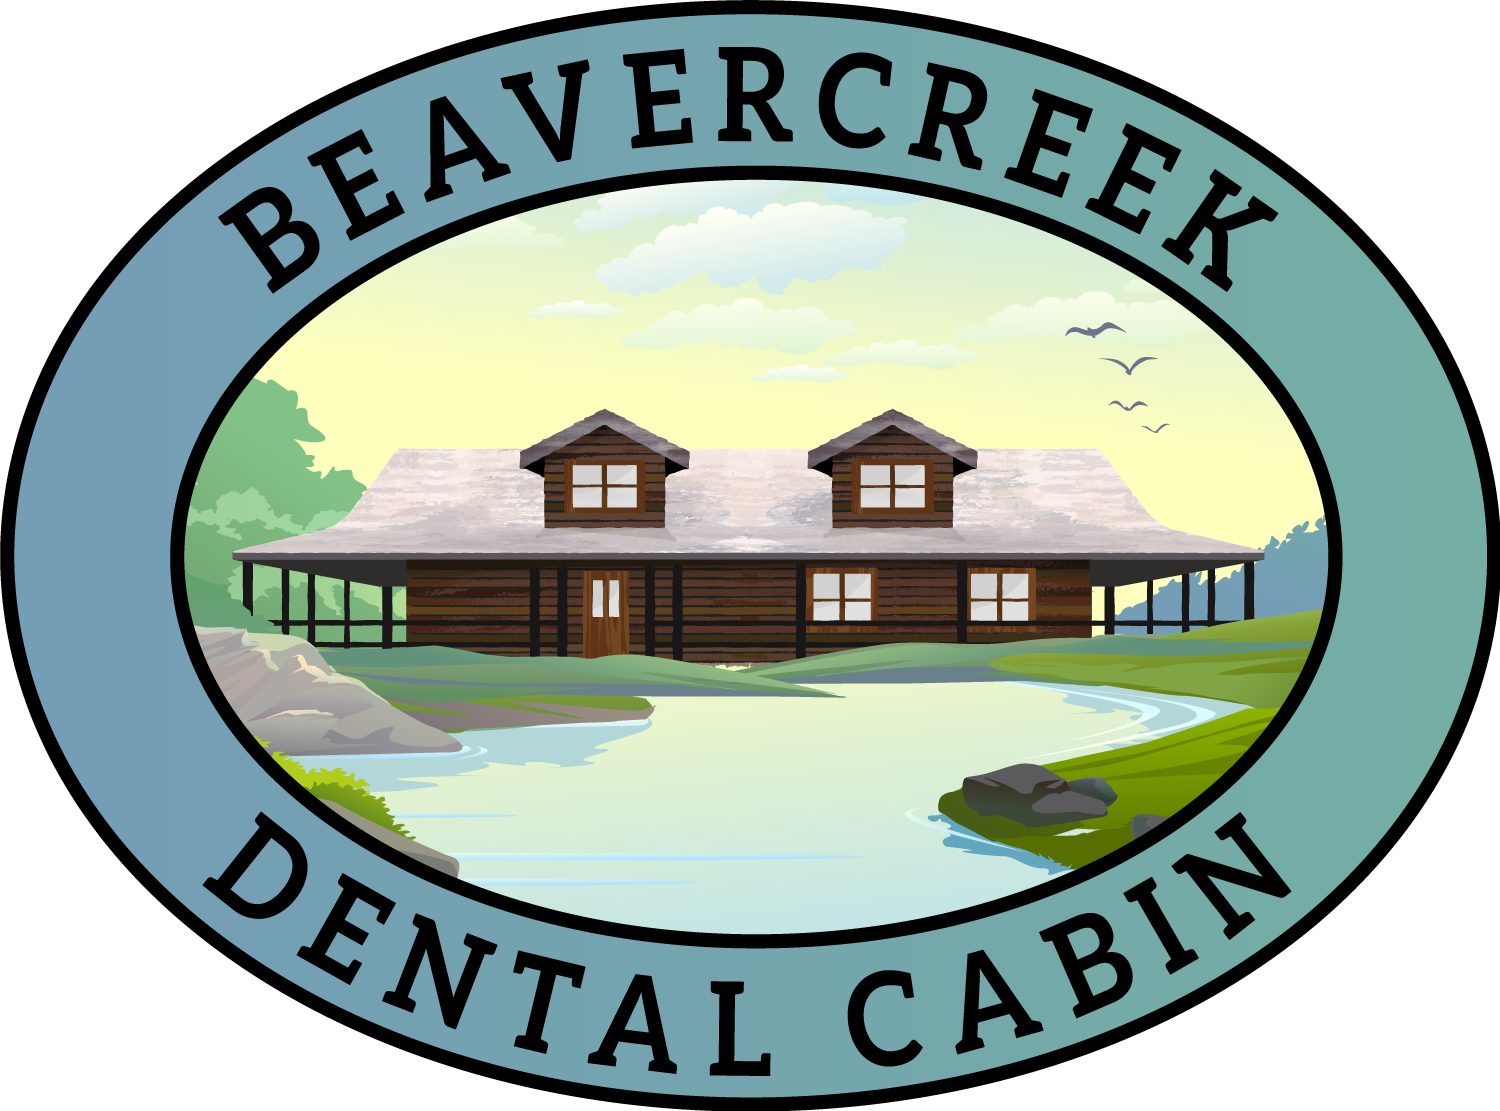 Beavercreek